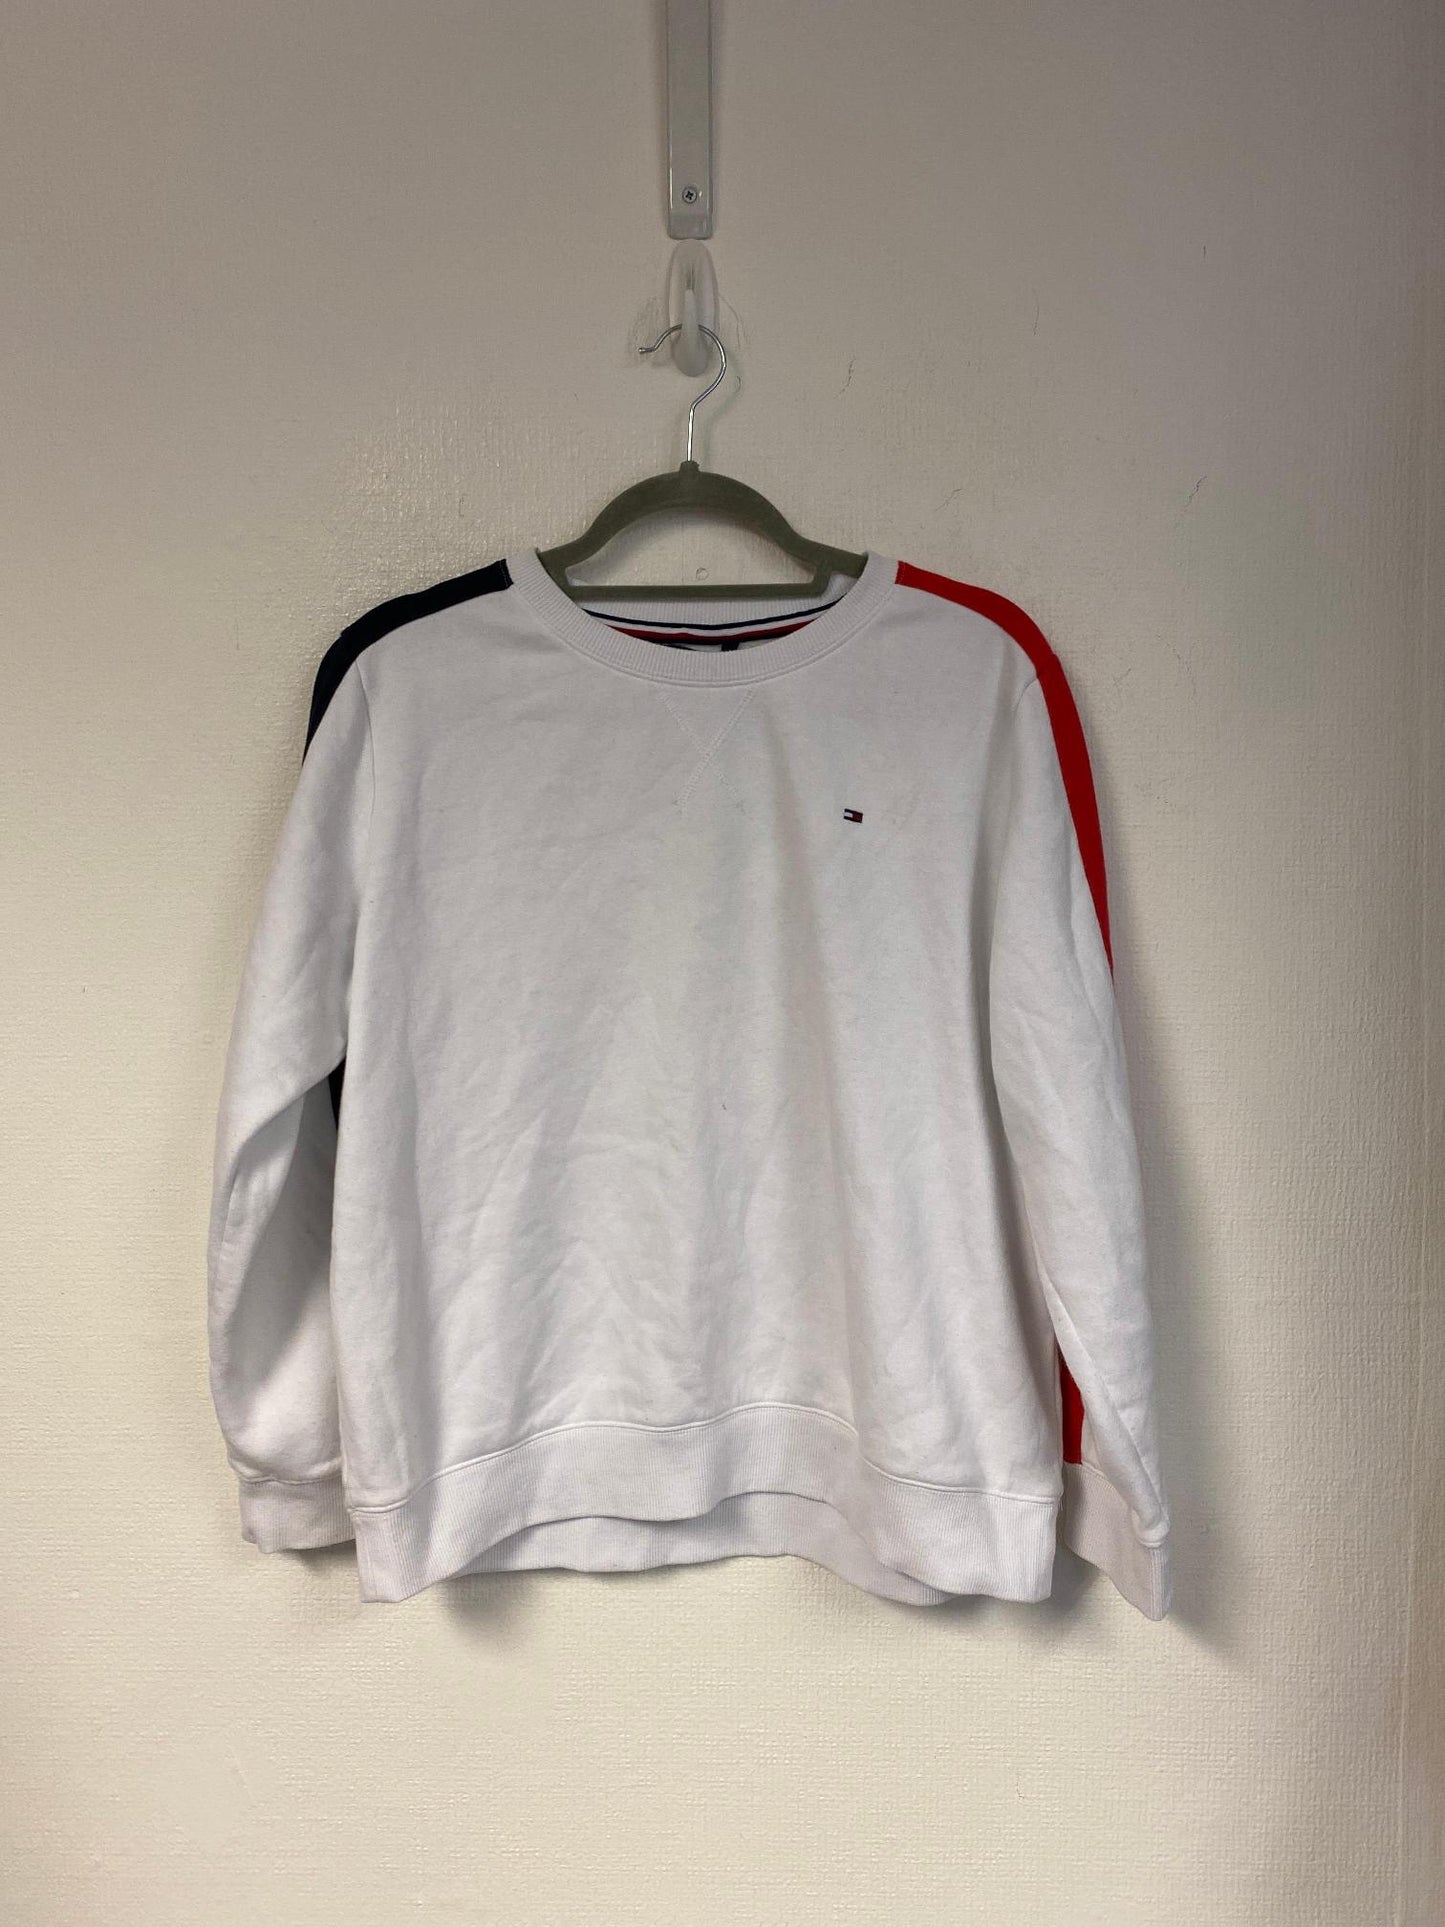 White graphic sweatshirt, size 12 - Damaged Item Sale